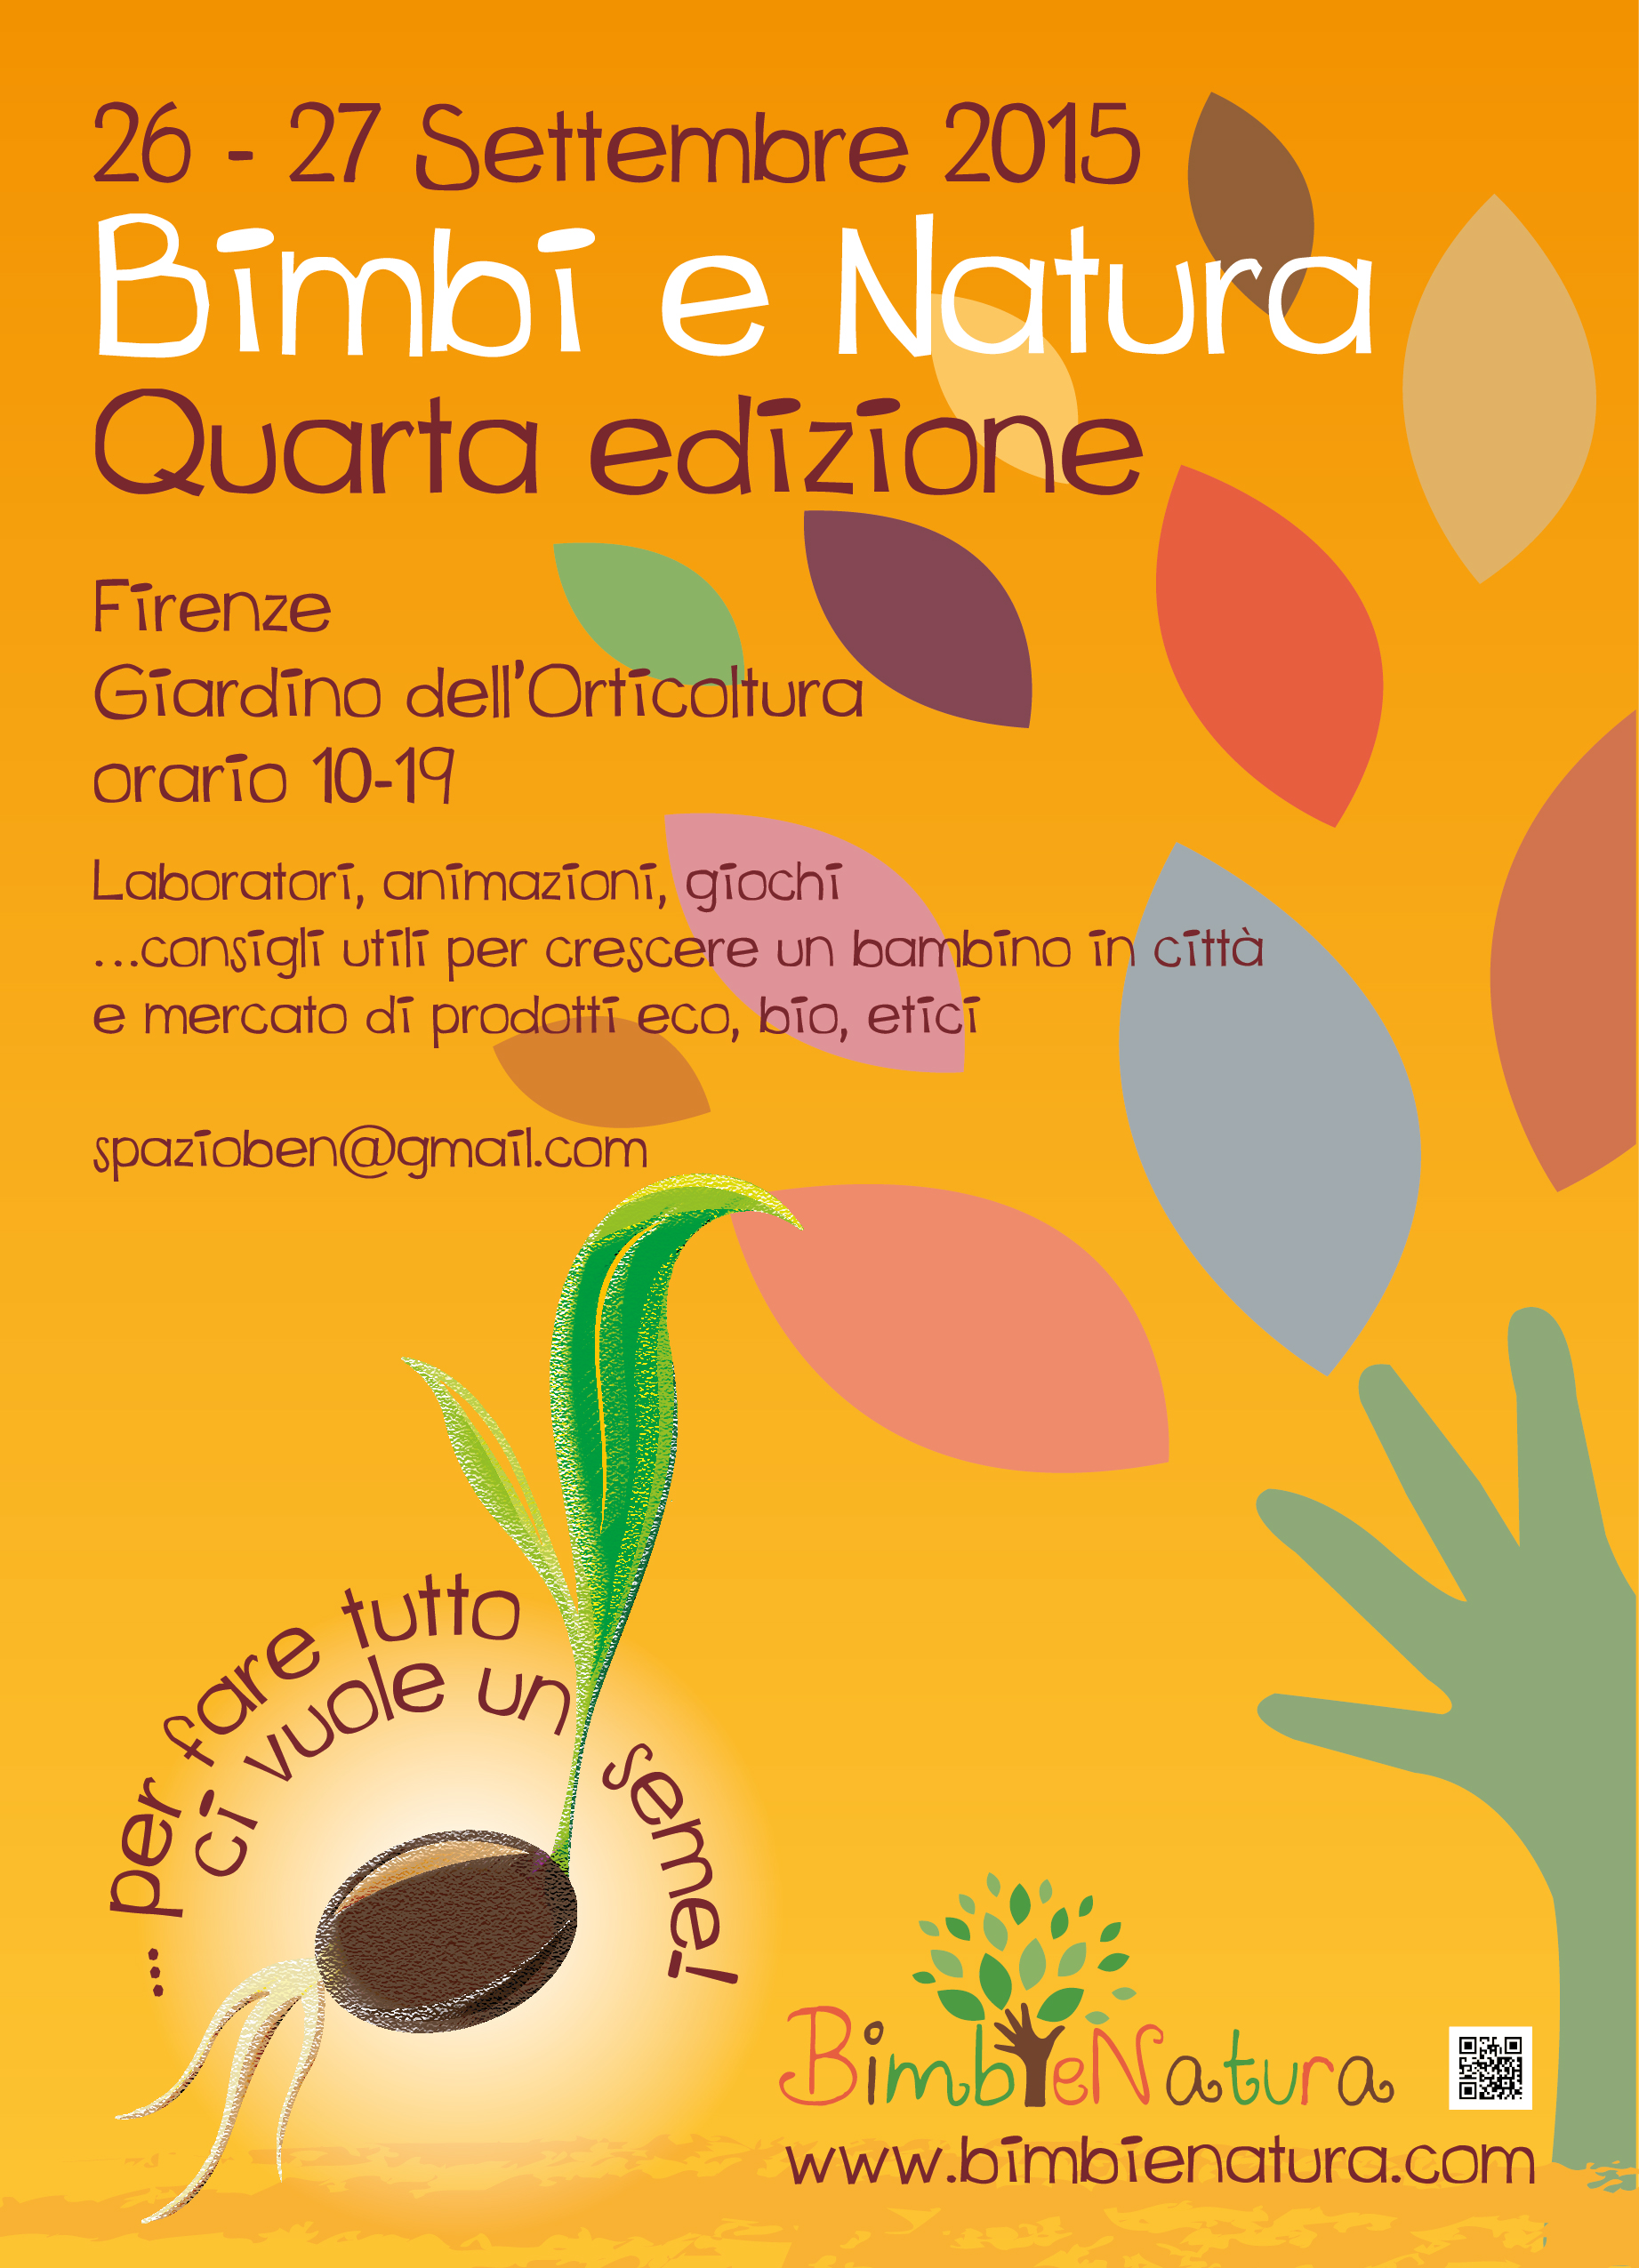 Bimbi e Natura 26/27 Settembre a Firenze insieme a Oxfam Italia per parlare ai piccini e ai grandi dell’importanza della solidarietà